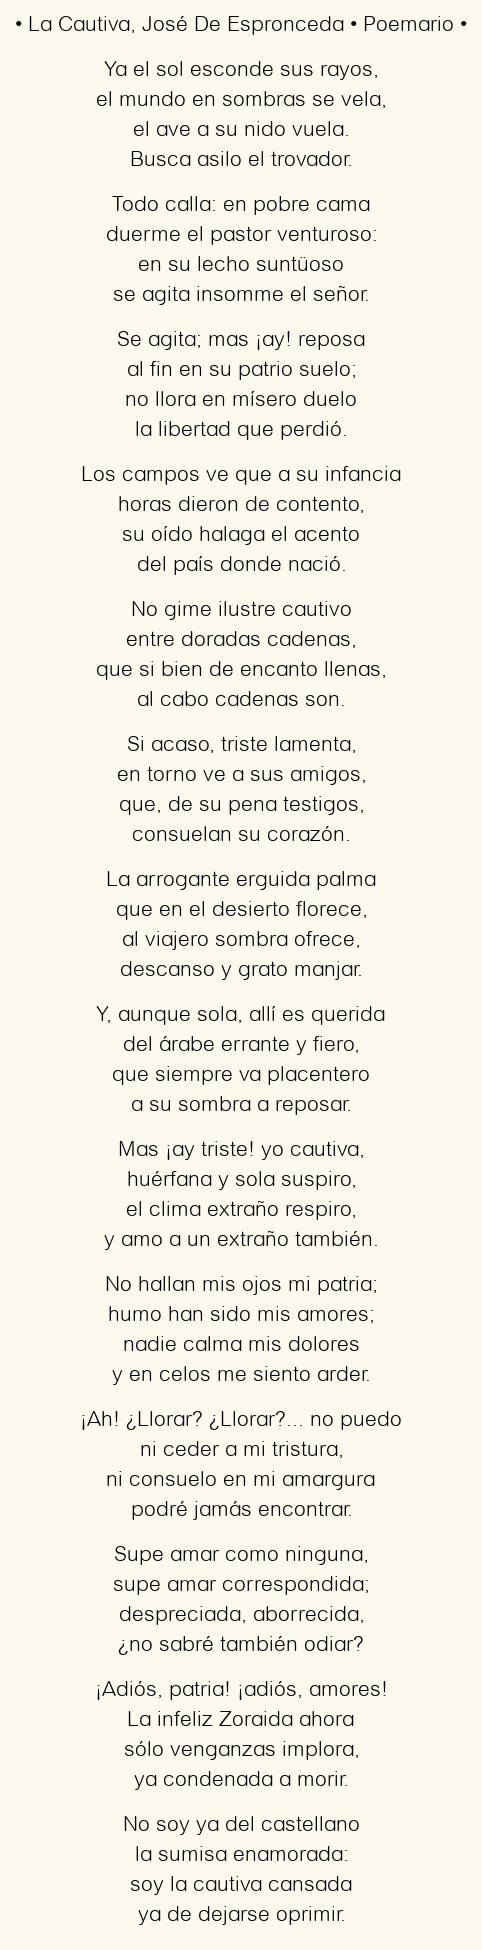 Imagen con el poema La Cautiva, por José De Espronceda